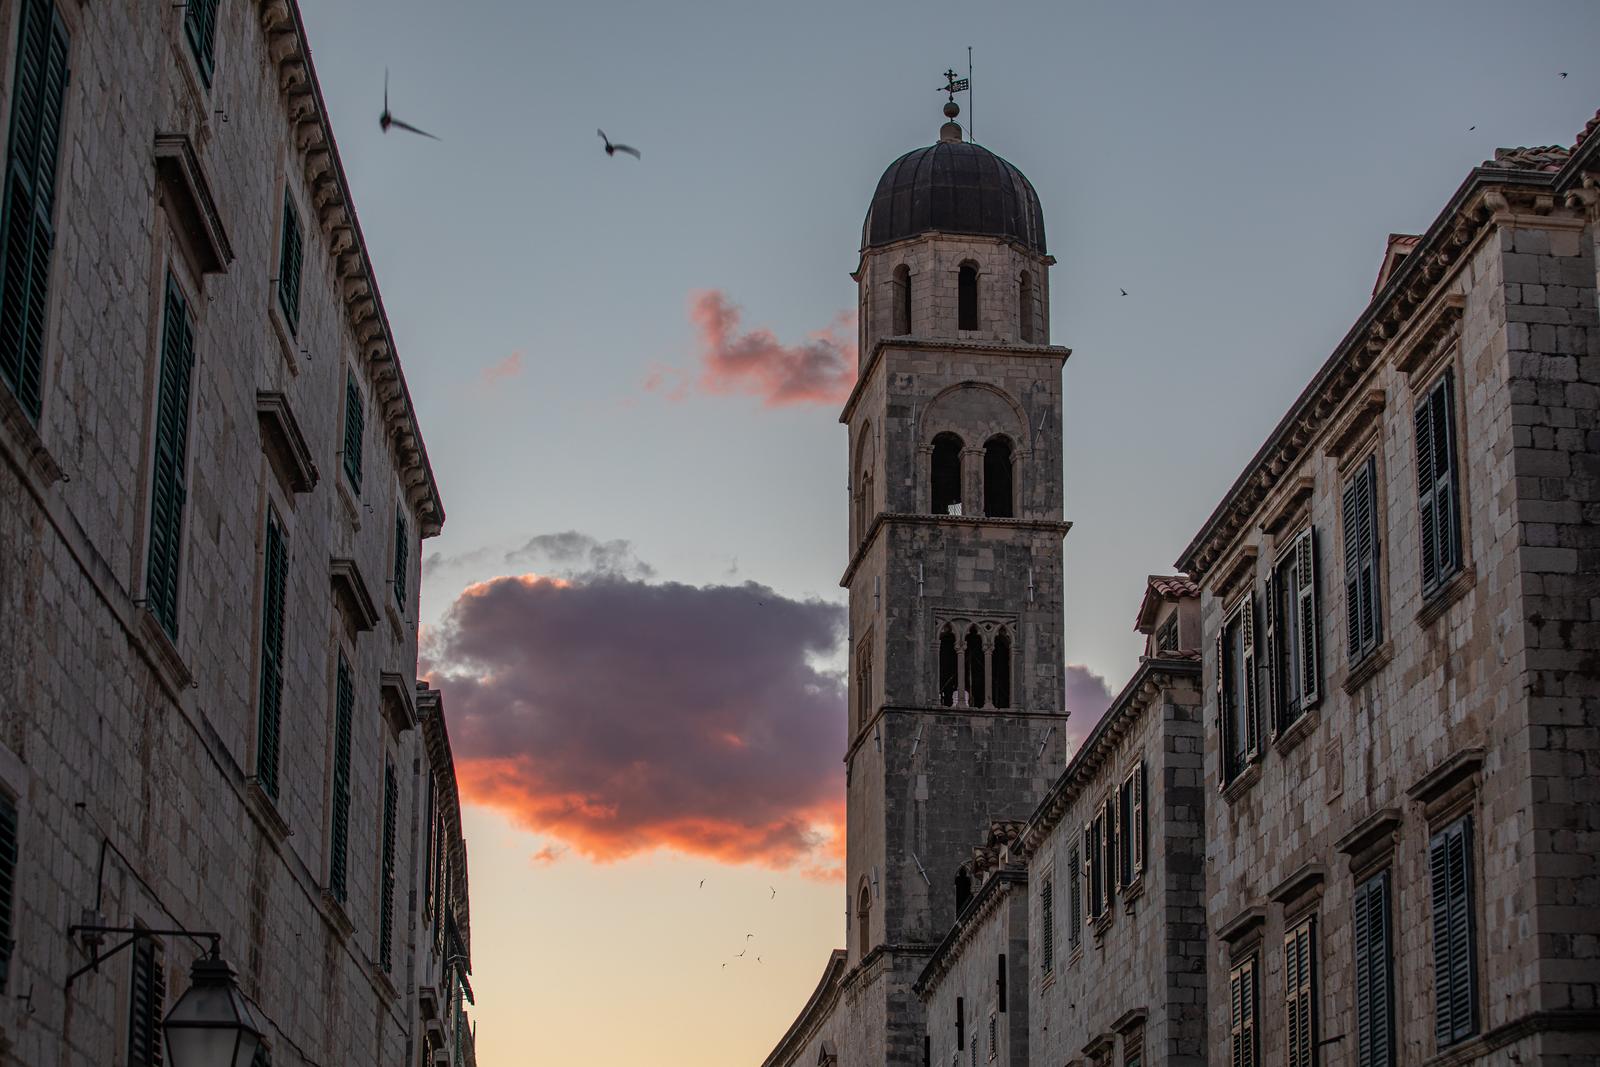 22.09.2022., Stara gradska jezgra, Dubrovnik - Nebo iznad Straduna prilikom zalaska sunca.  Photo: Grgo Jelavic/PIXSELL